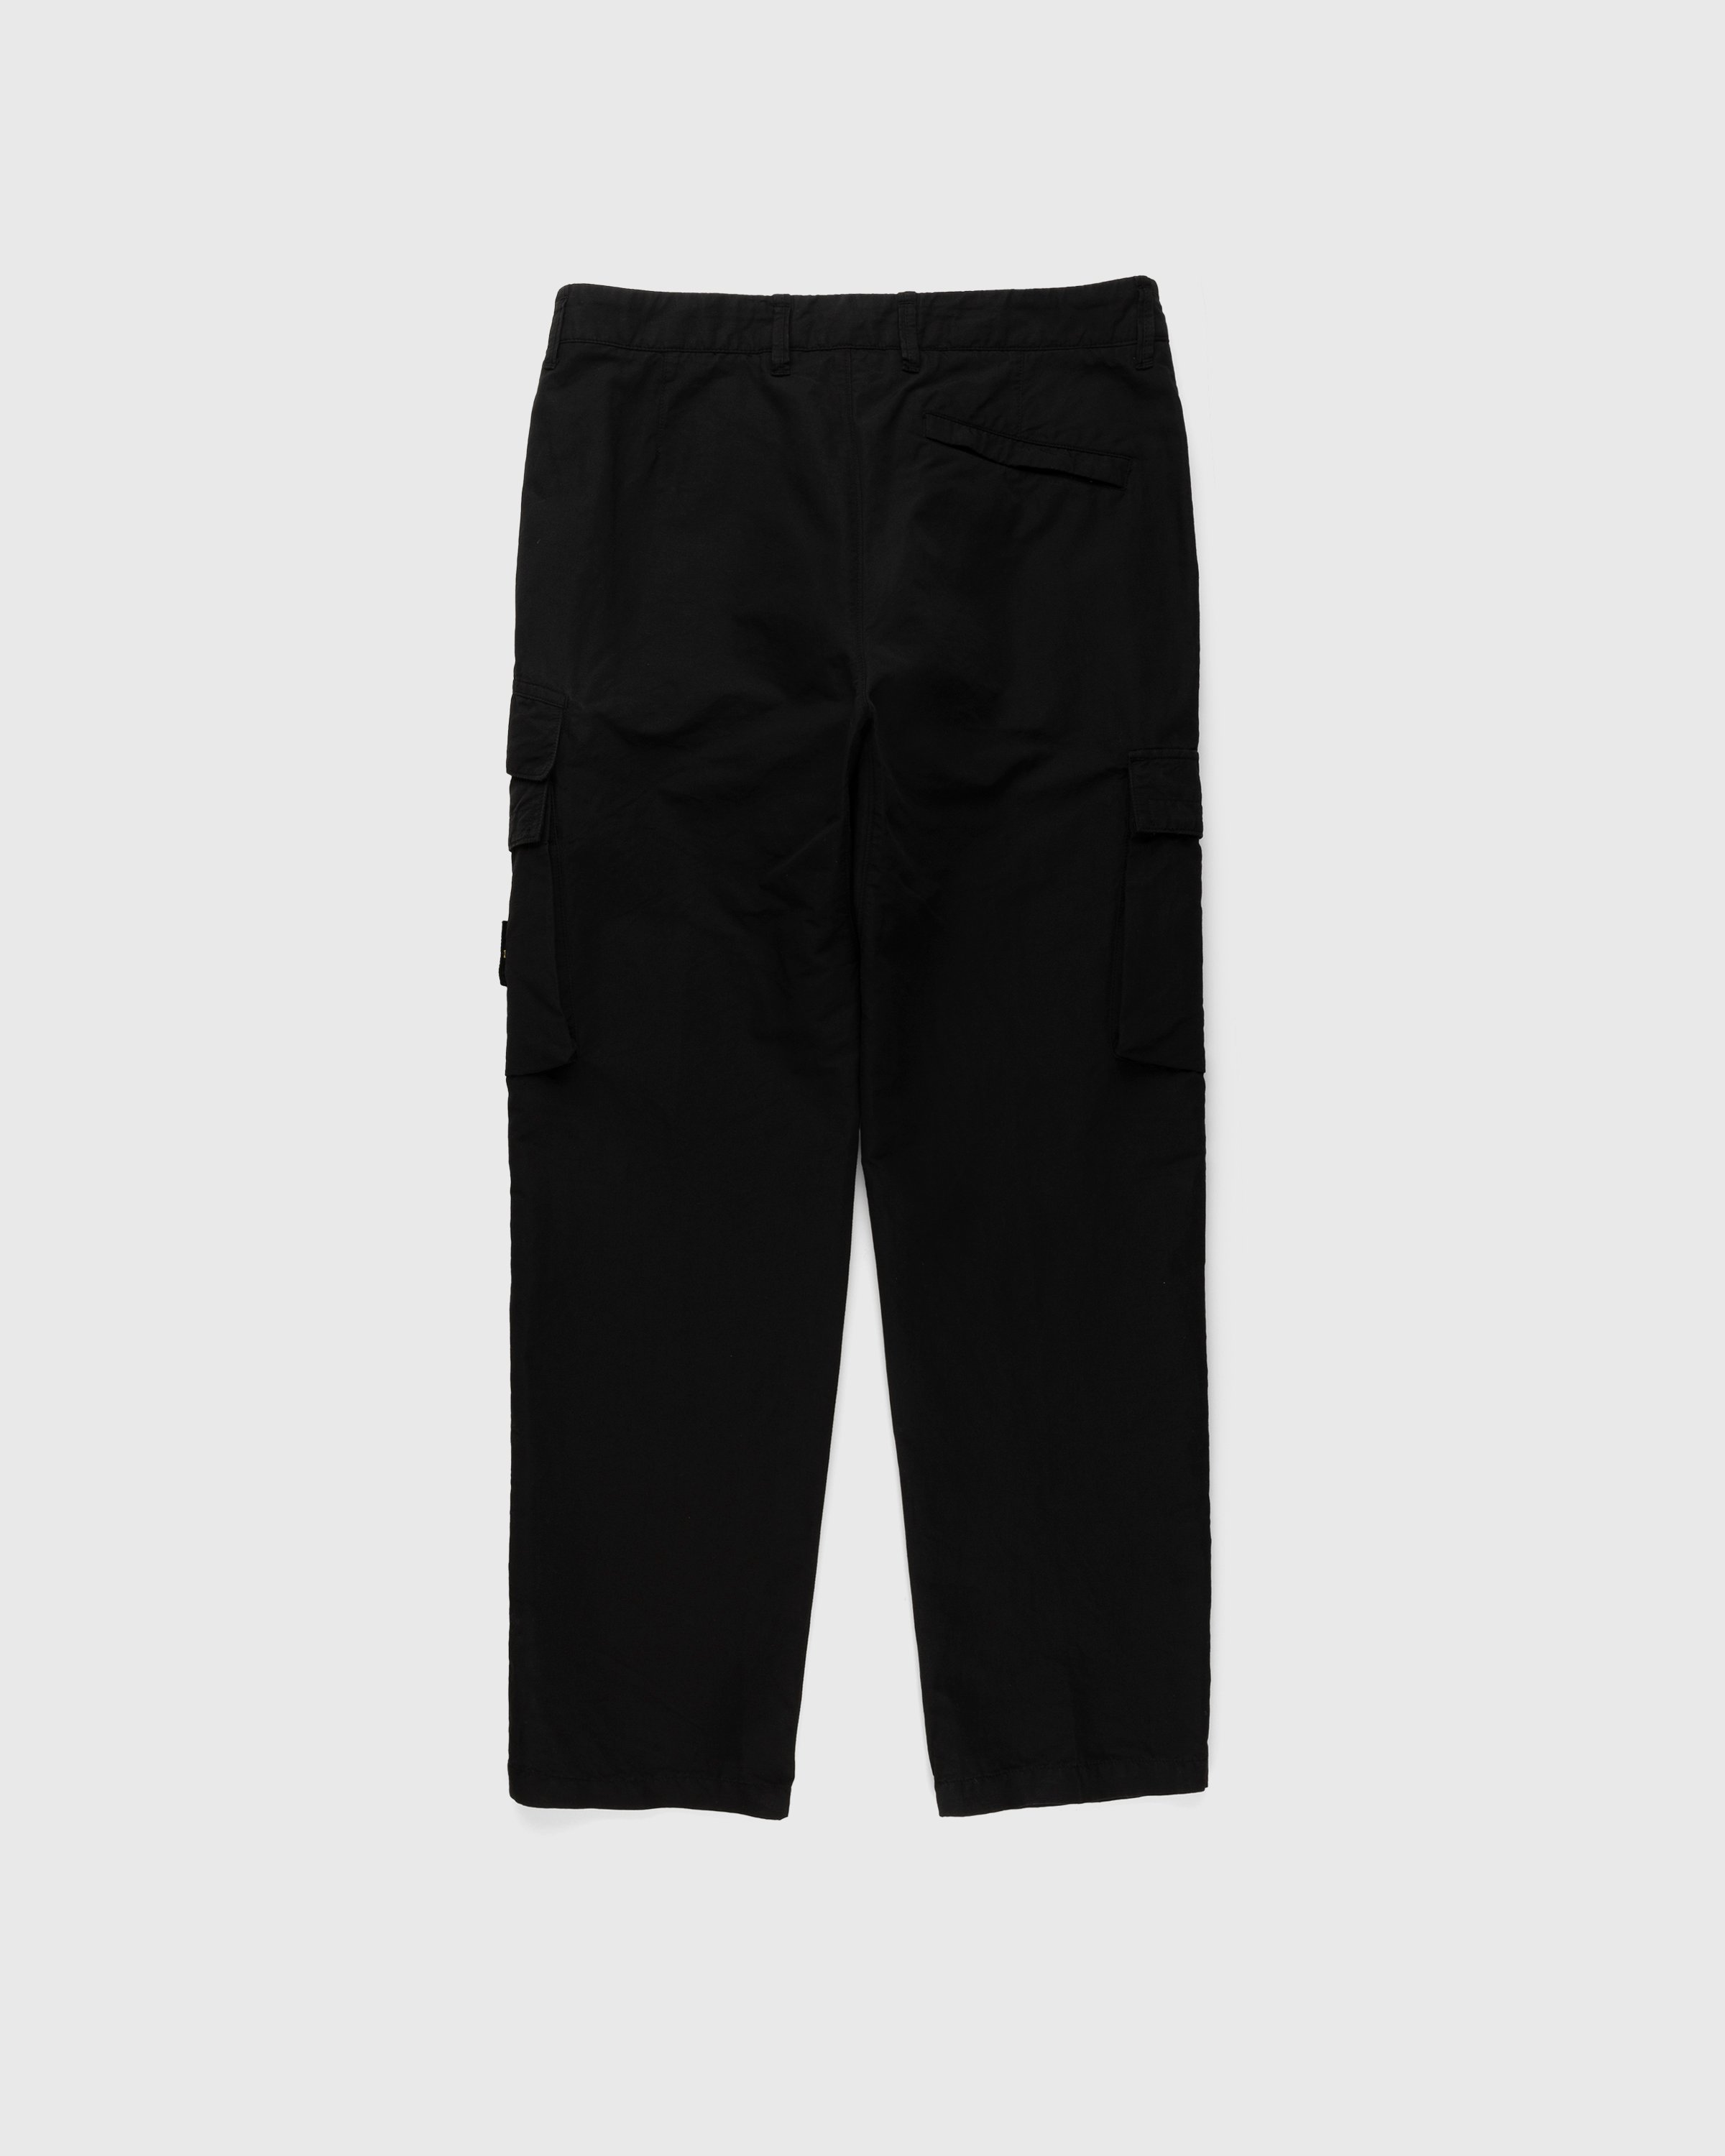 Stone Island - 31706 Garment-Dyed Cargo Pants Black - Clothing - Black - Image 2